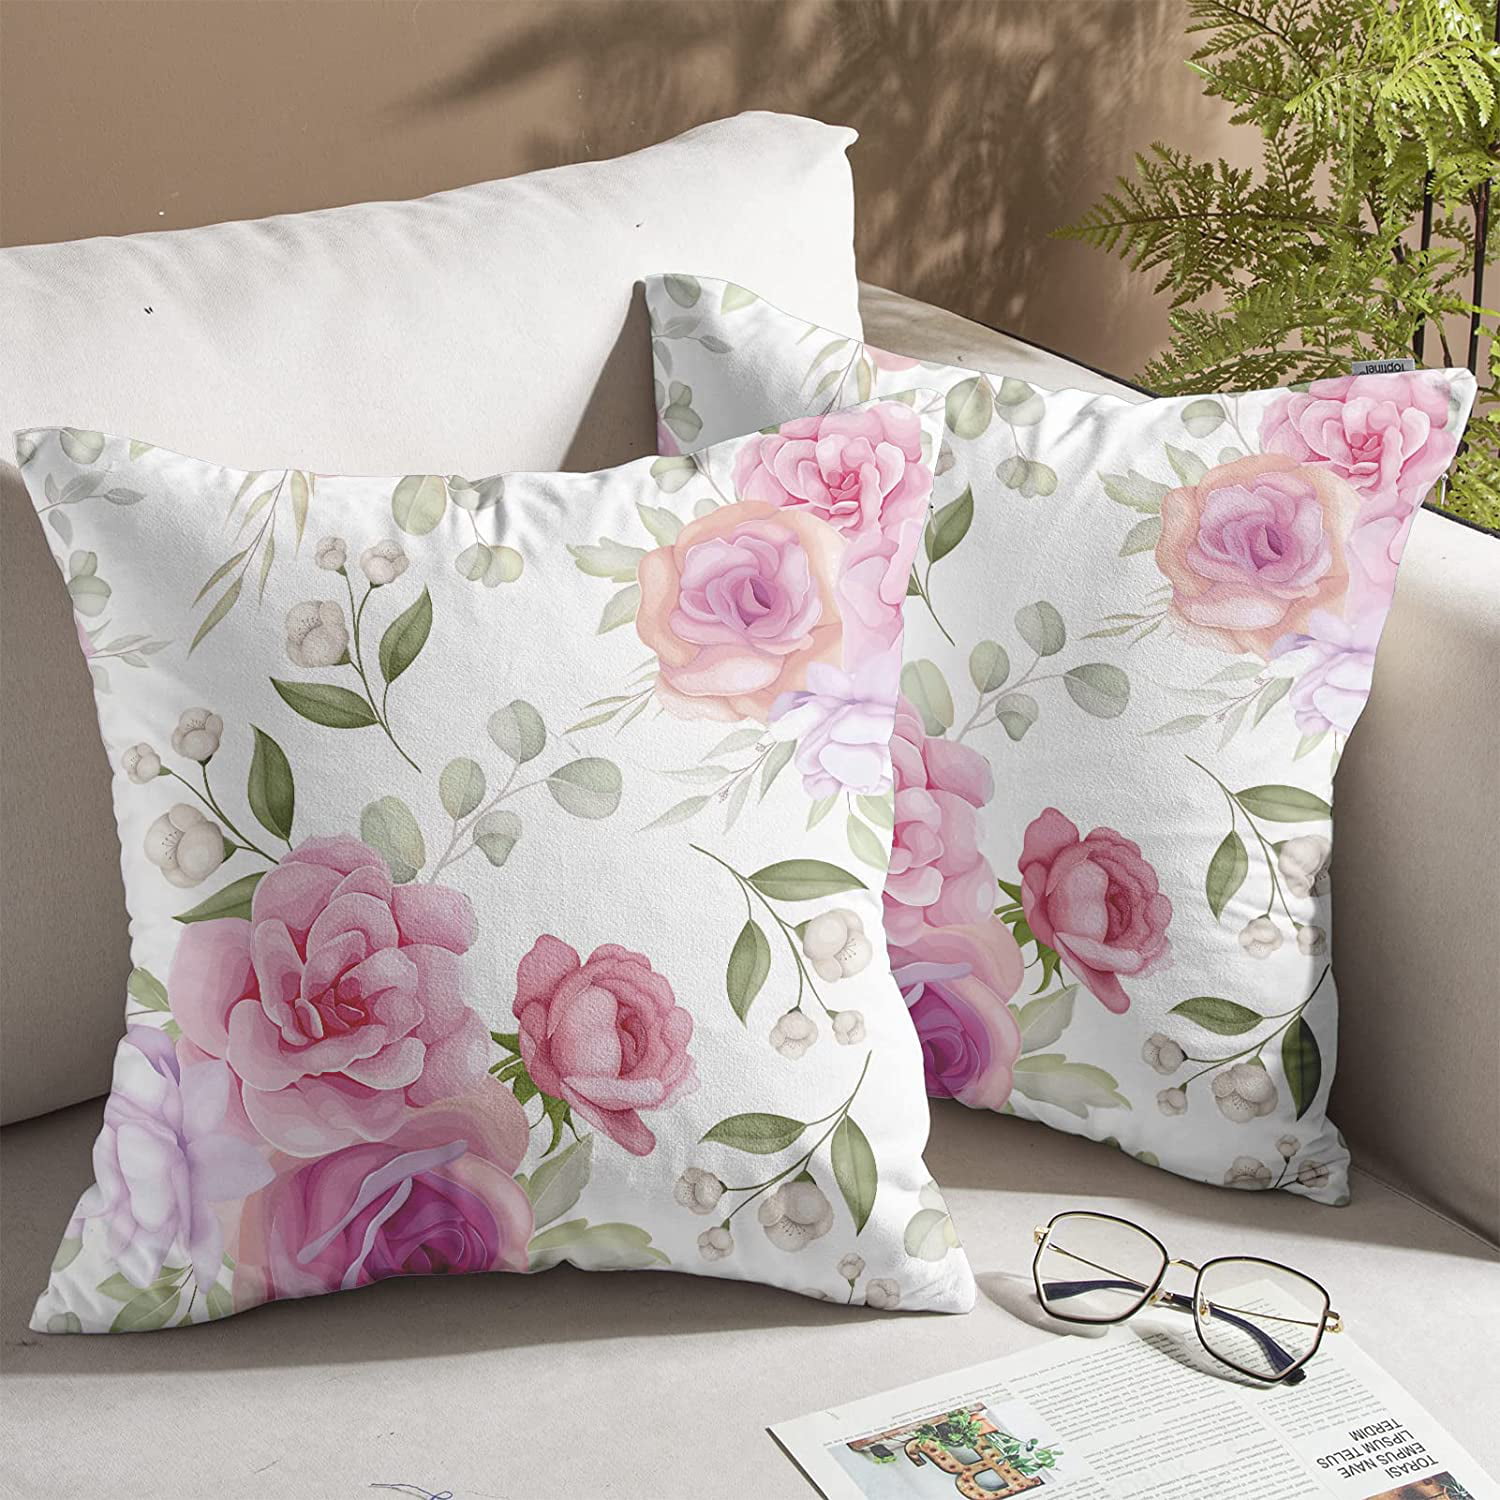 Retro Cactus Succulent Cotton Linen Plants Pillow Case Throw Cushion Cover Decor